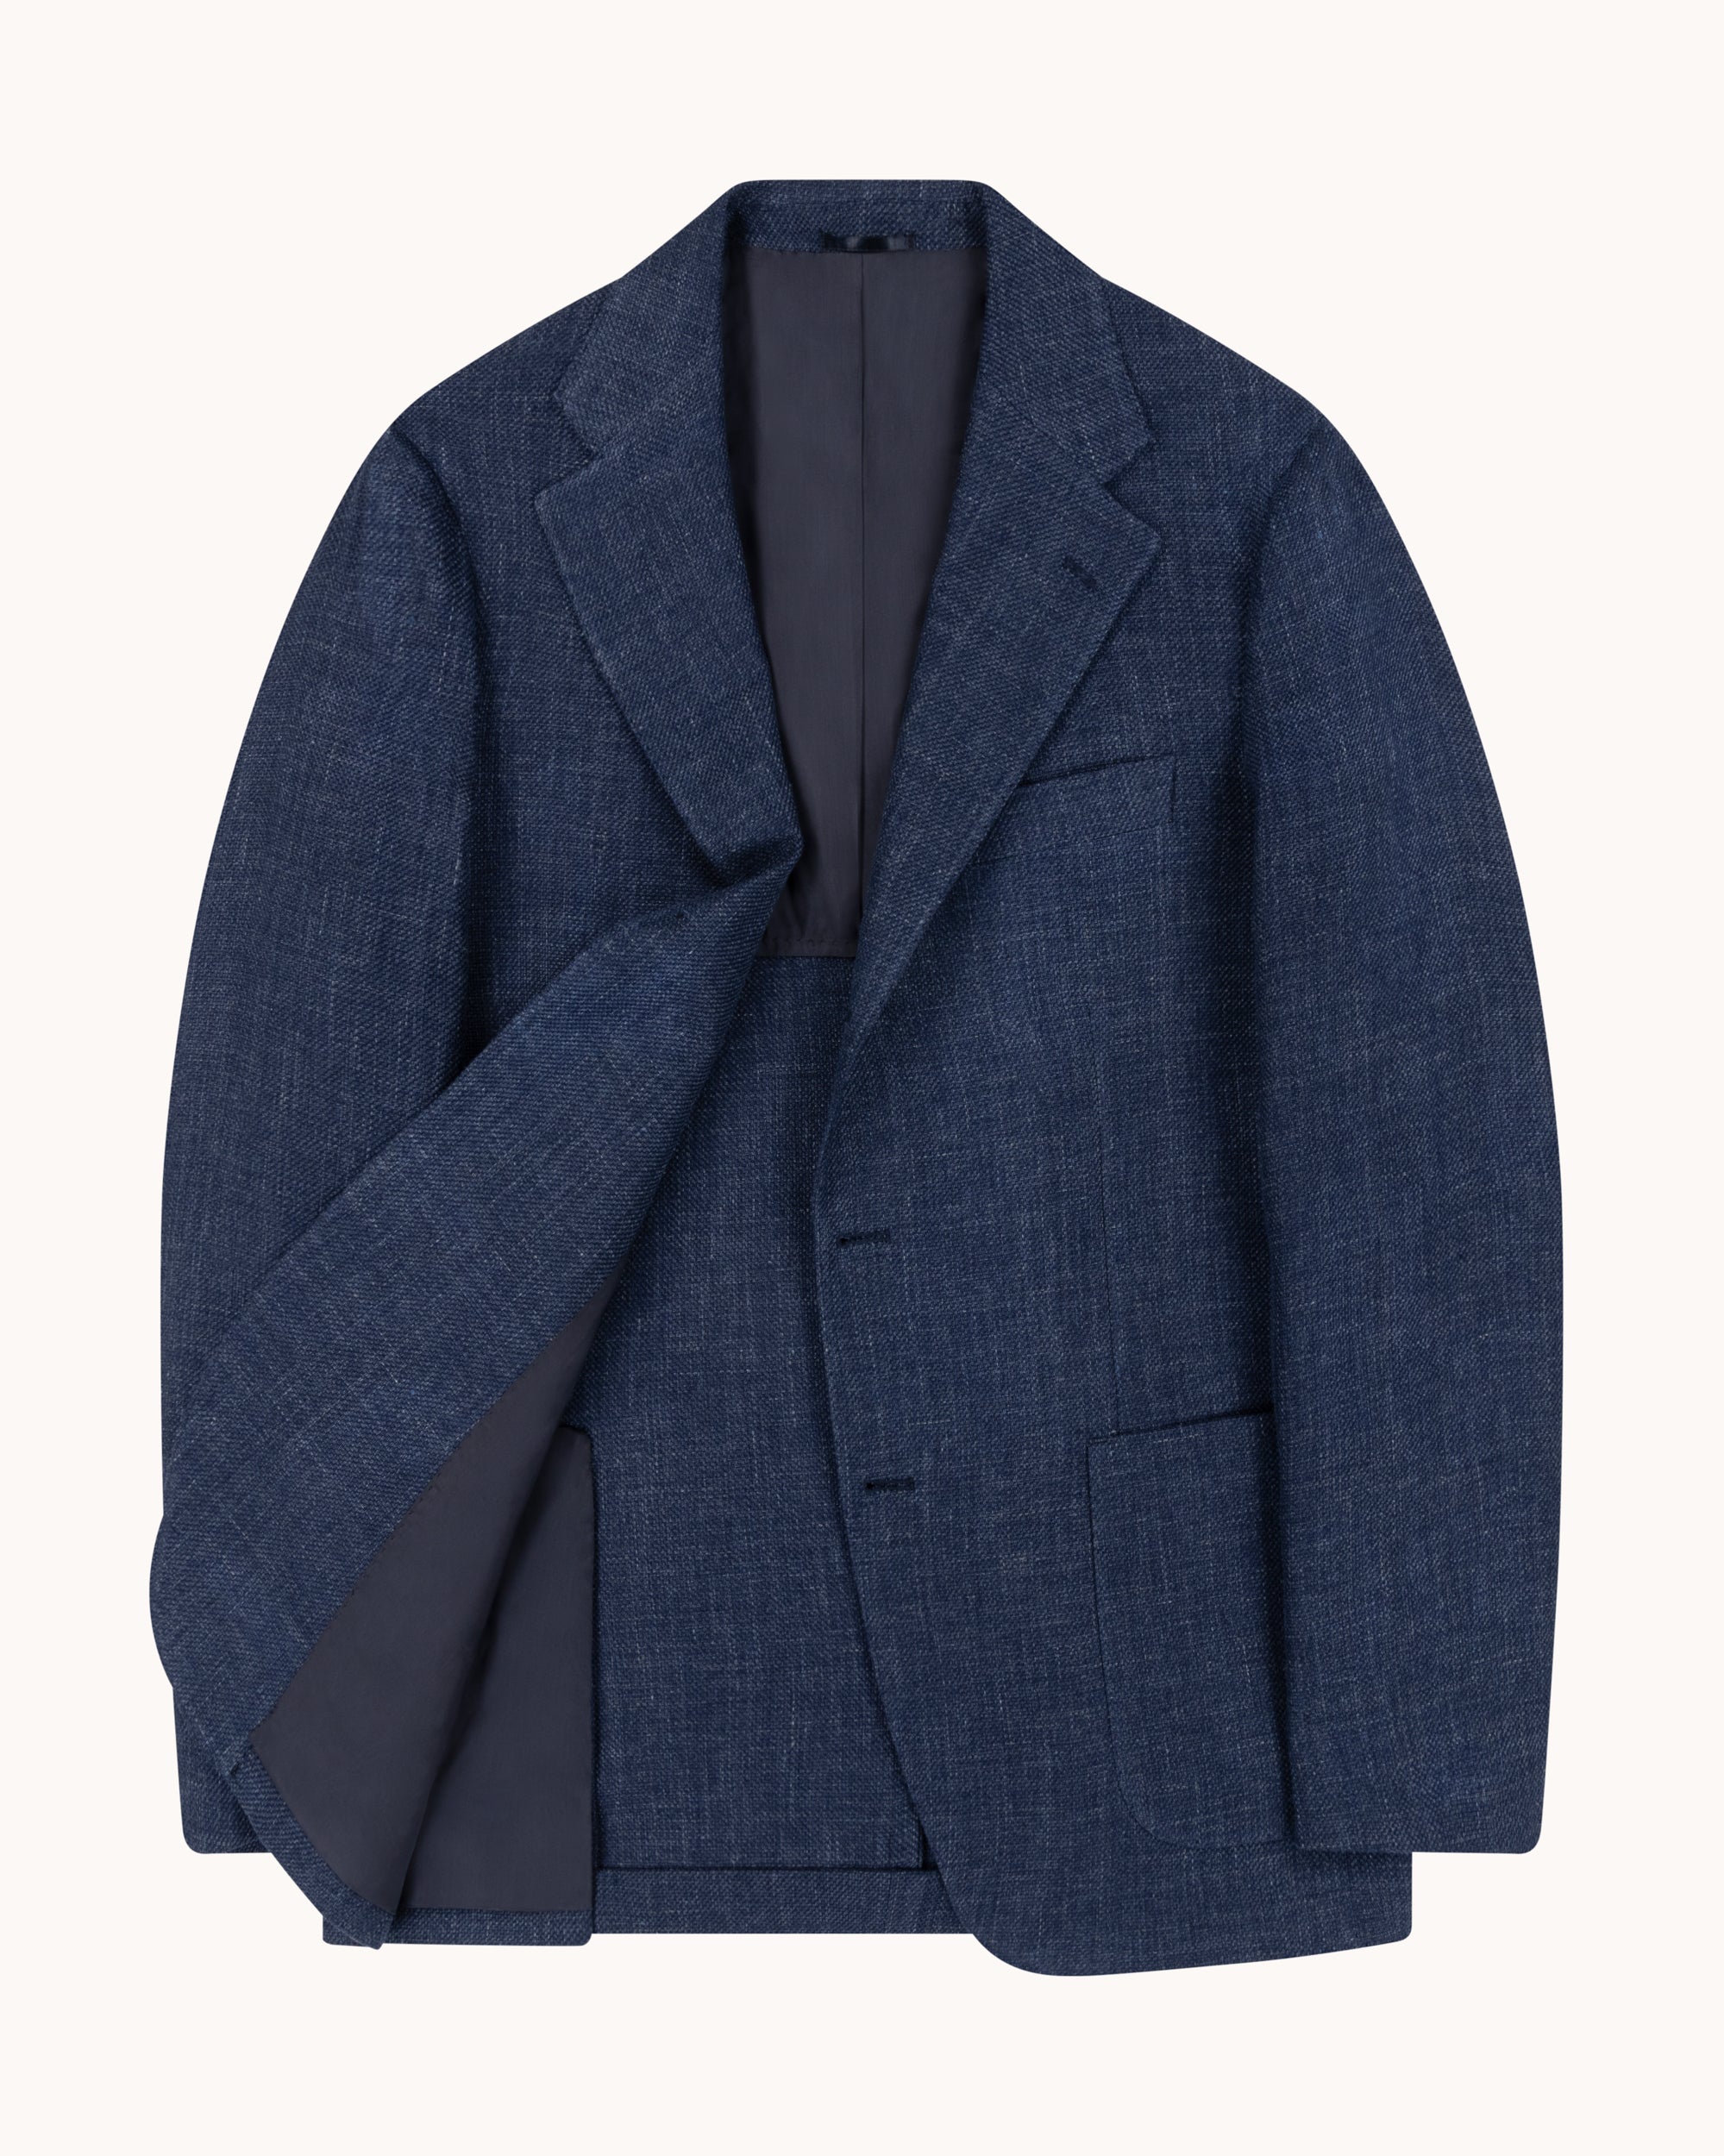 Sport Jacket - Dark Blue Linen Cotton